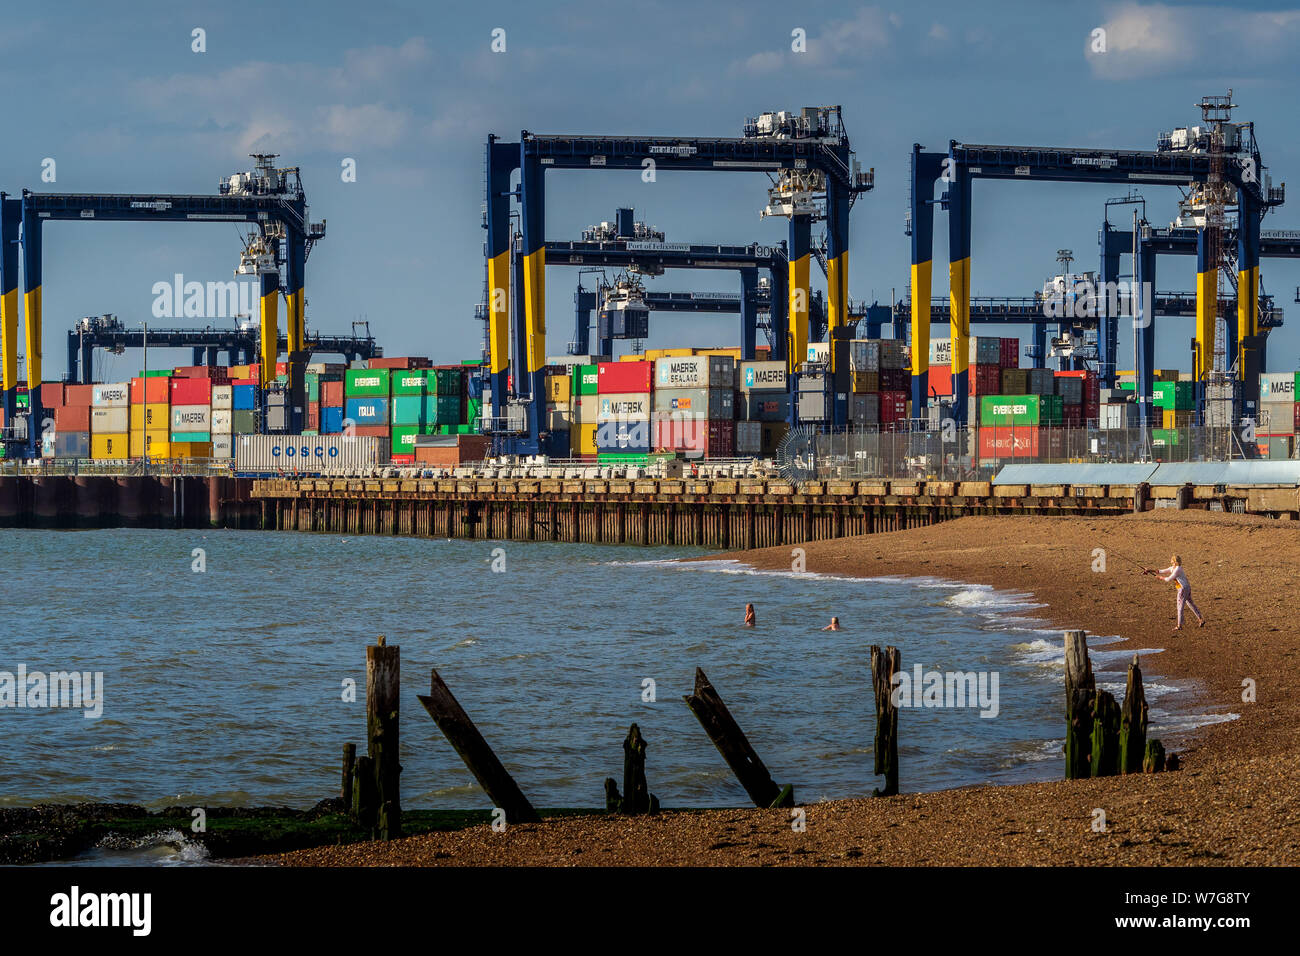 Envío de contenedores en el puerto de contenedores de Felixstowe en Suffolk del este de Inglaterra. El puerto de Felixstowe es el puerto de contenedores más grande del Reino Unido. Foto de stock